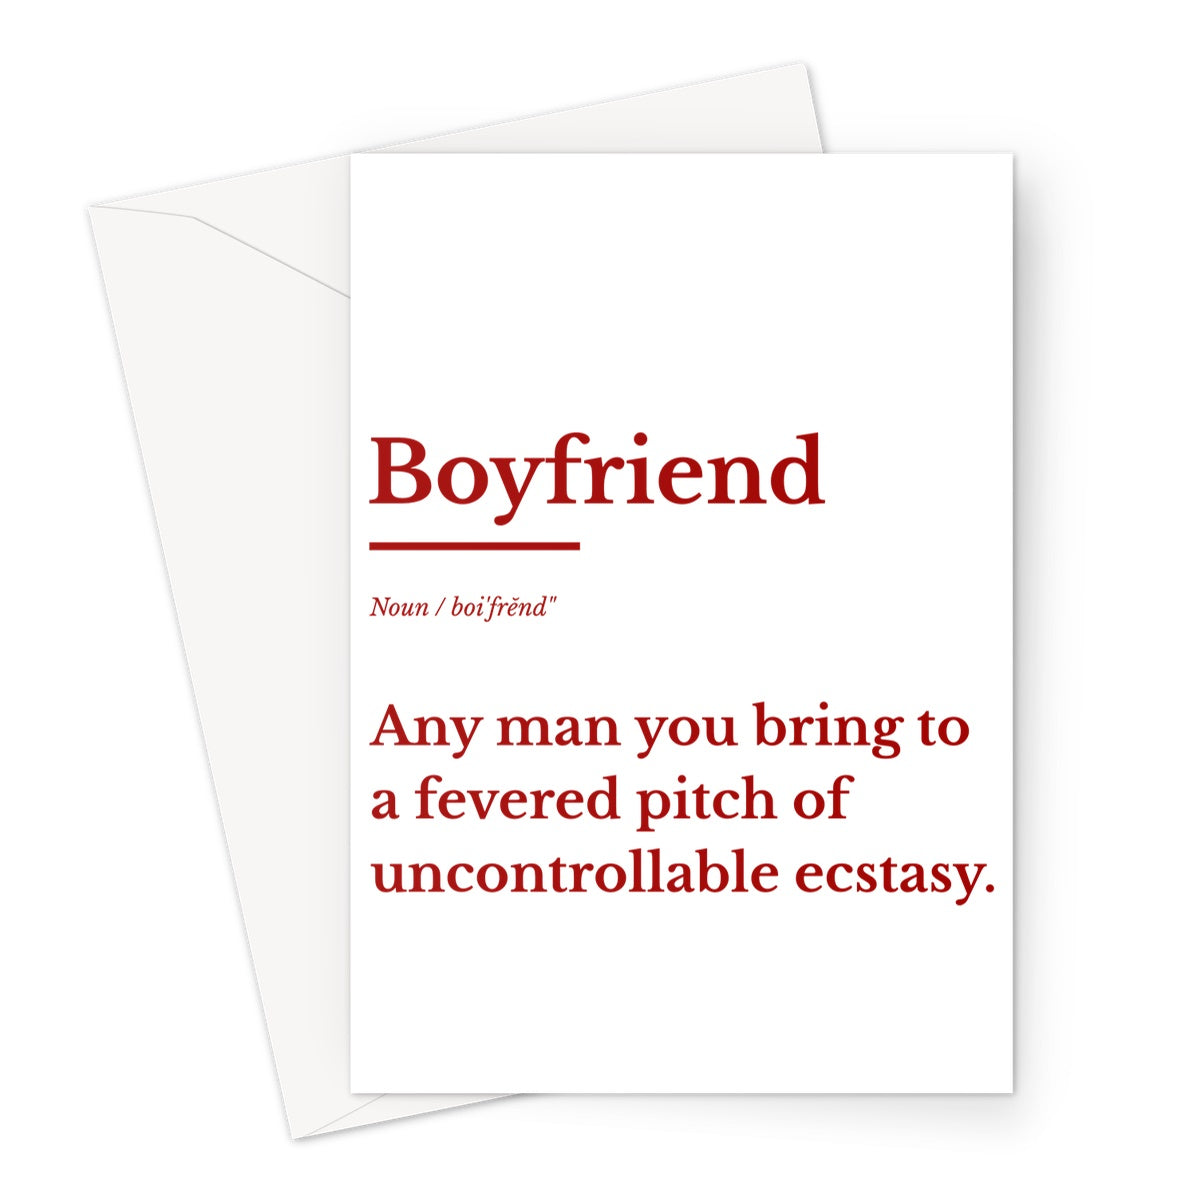 Boyfriend definition Greeting Card